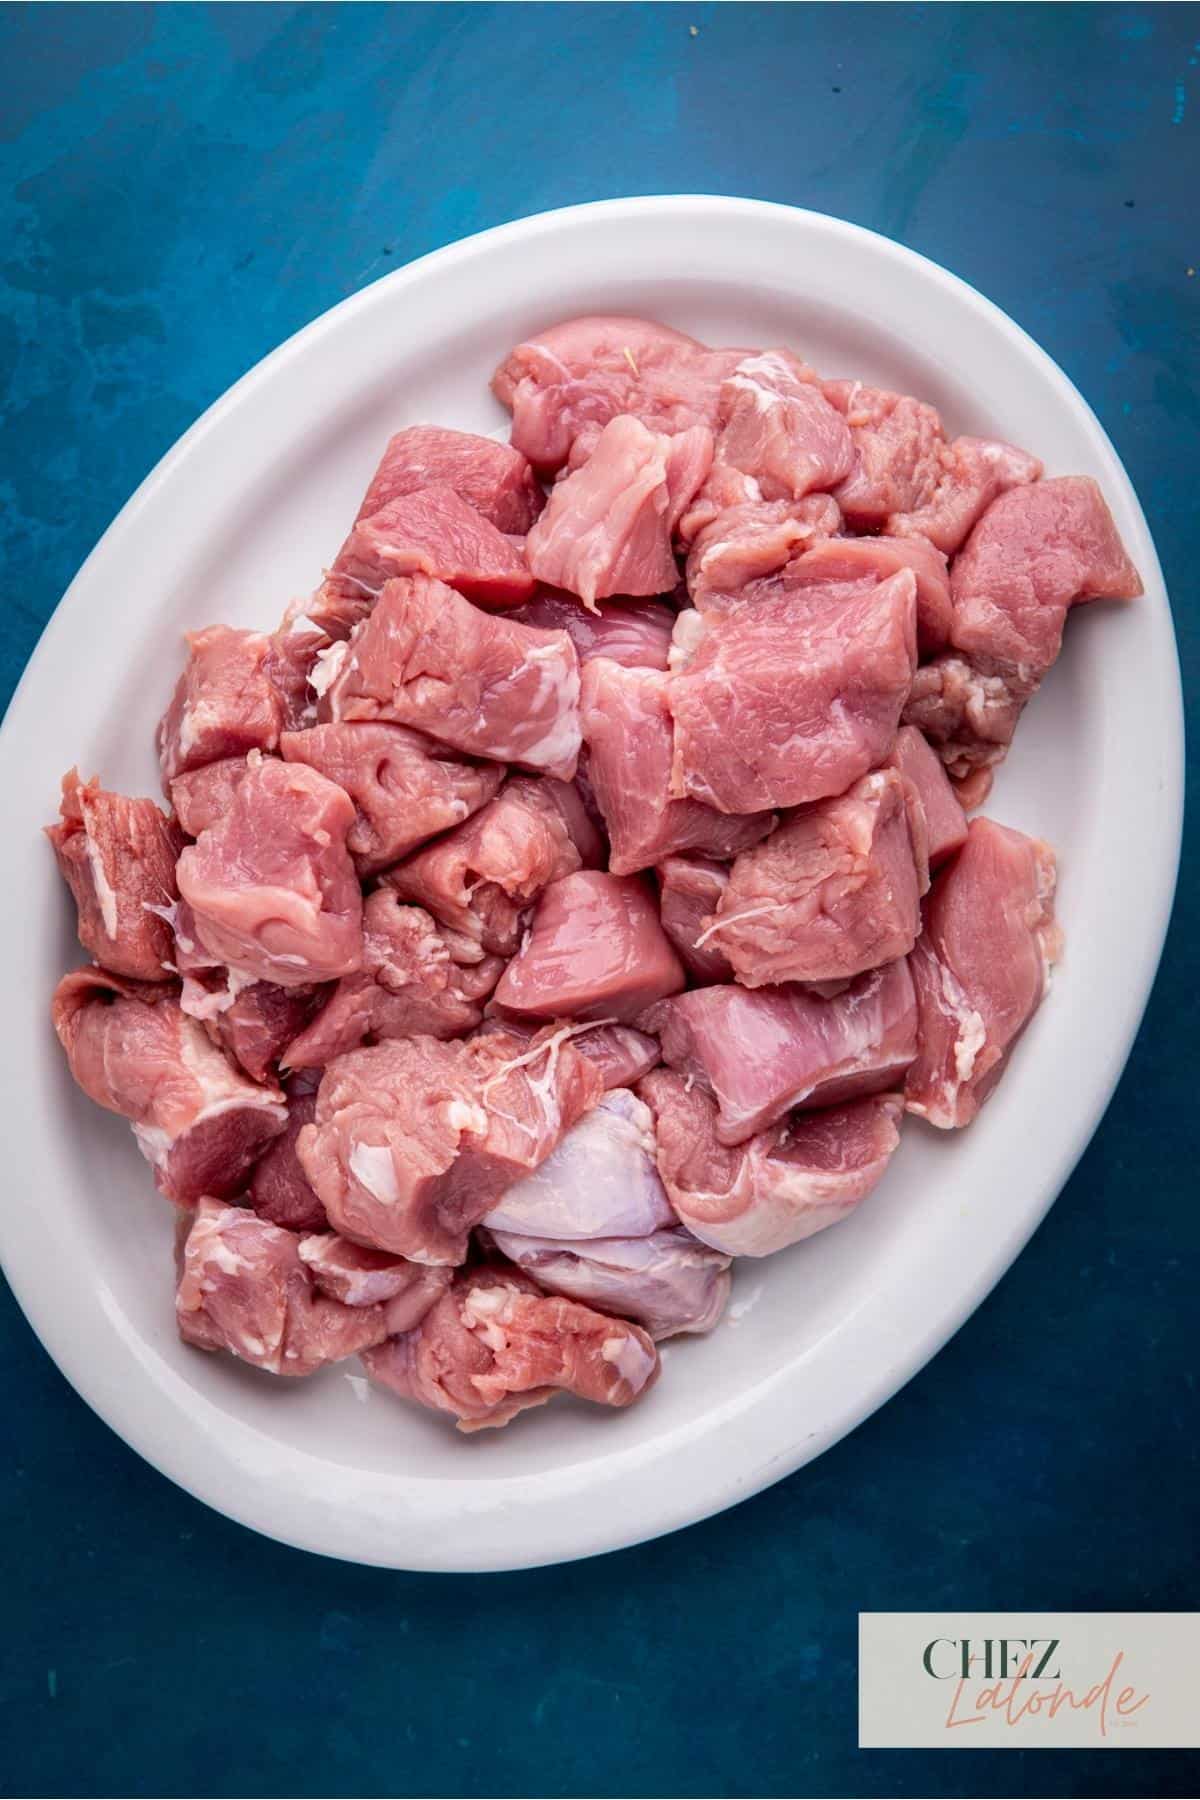 a plate of cut pork tenderloin.  